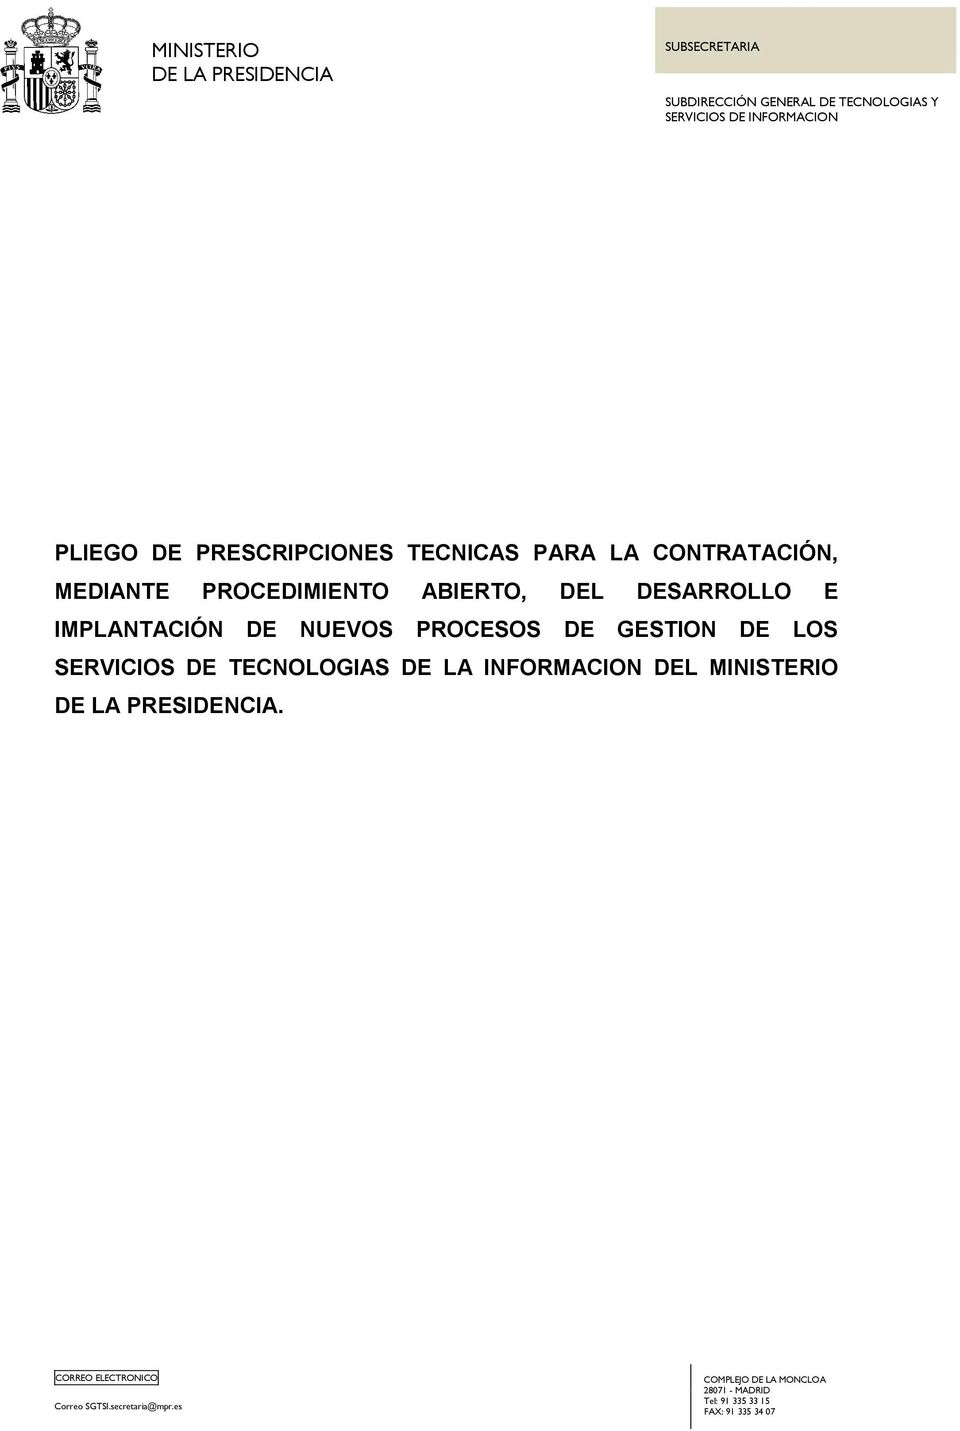 NUEVOS PROCESOS DE GESTION DE LOS SERVICIOS DE TECNOLOGIAS DE LA INFORMACION DEL MINISTERIO DE LA PRESIDENCIA.